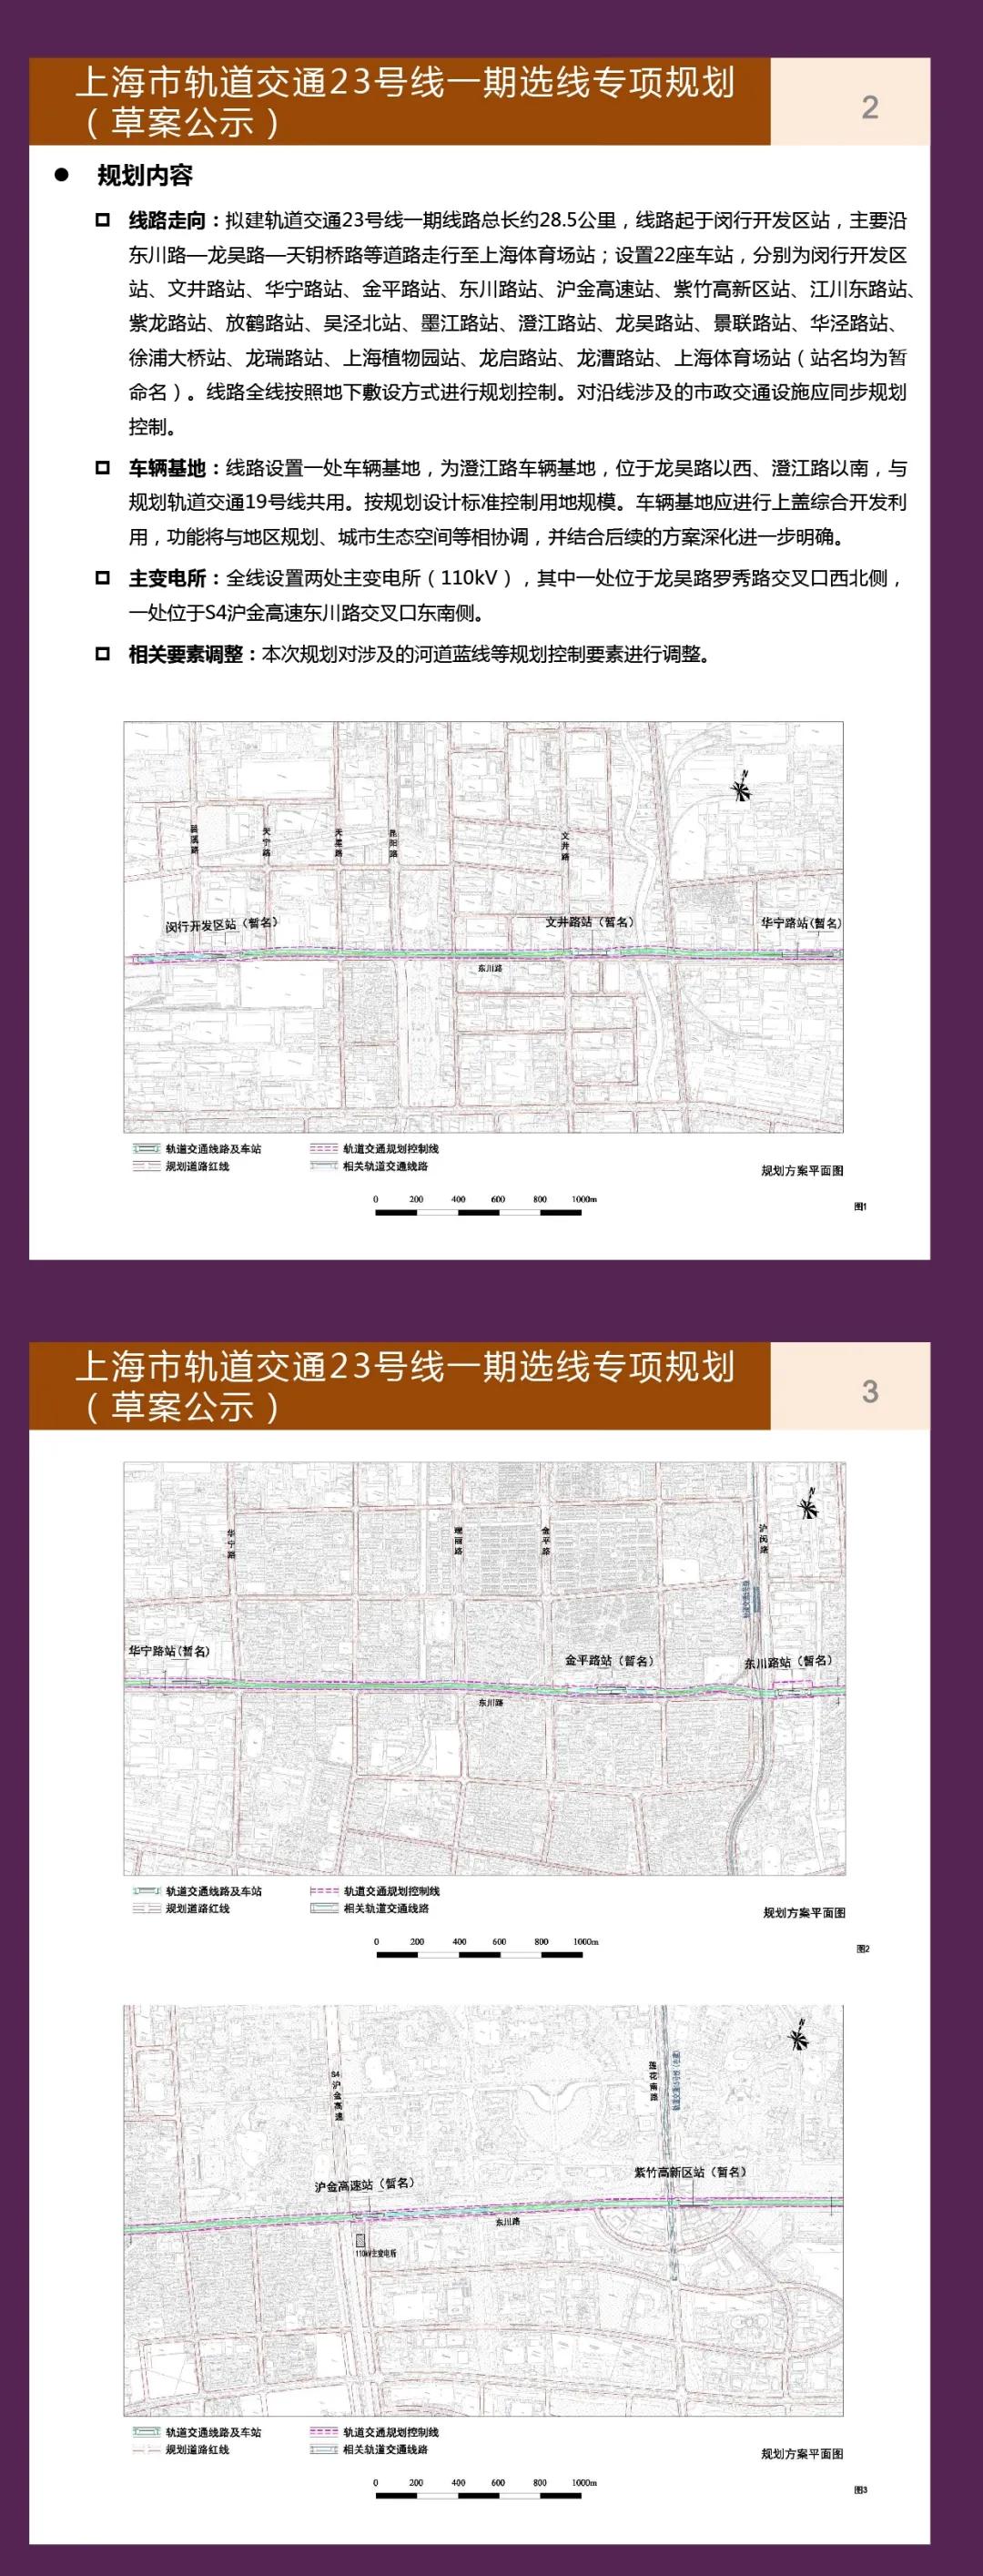 上海市轨道交通23号线一期选线专项规划